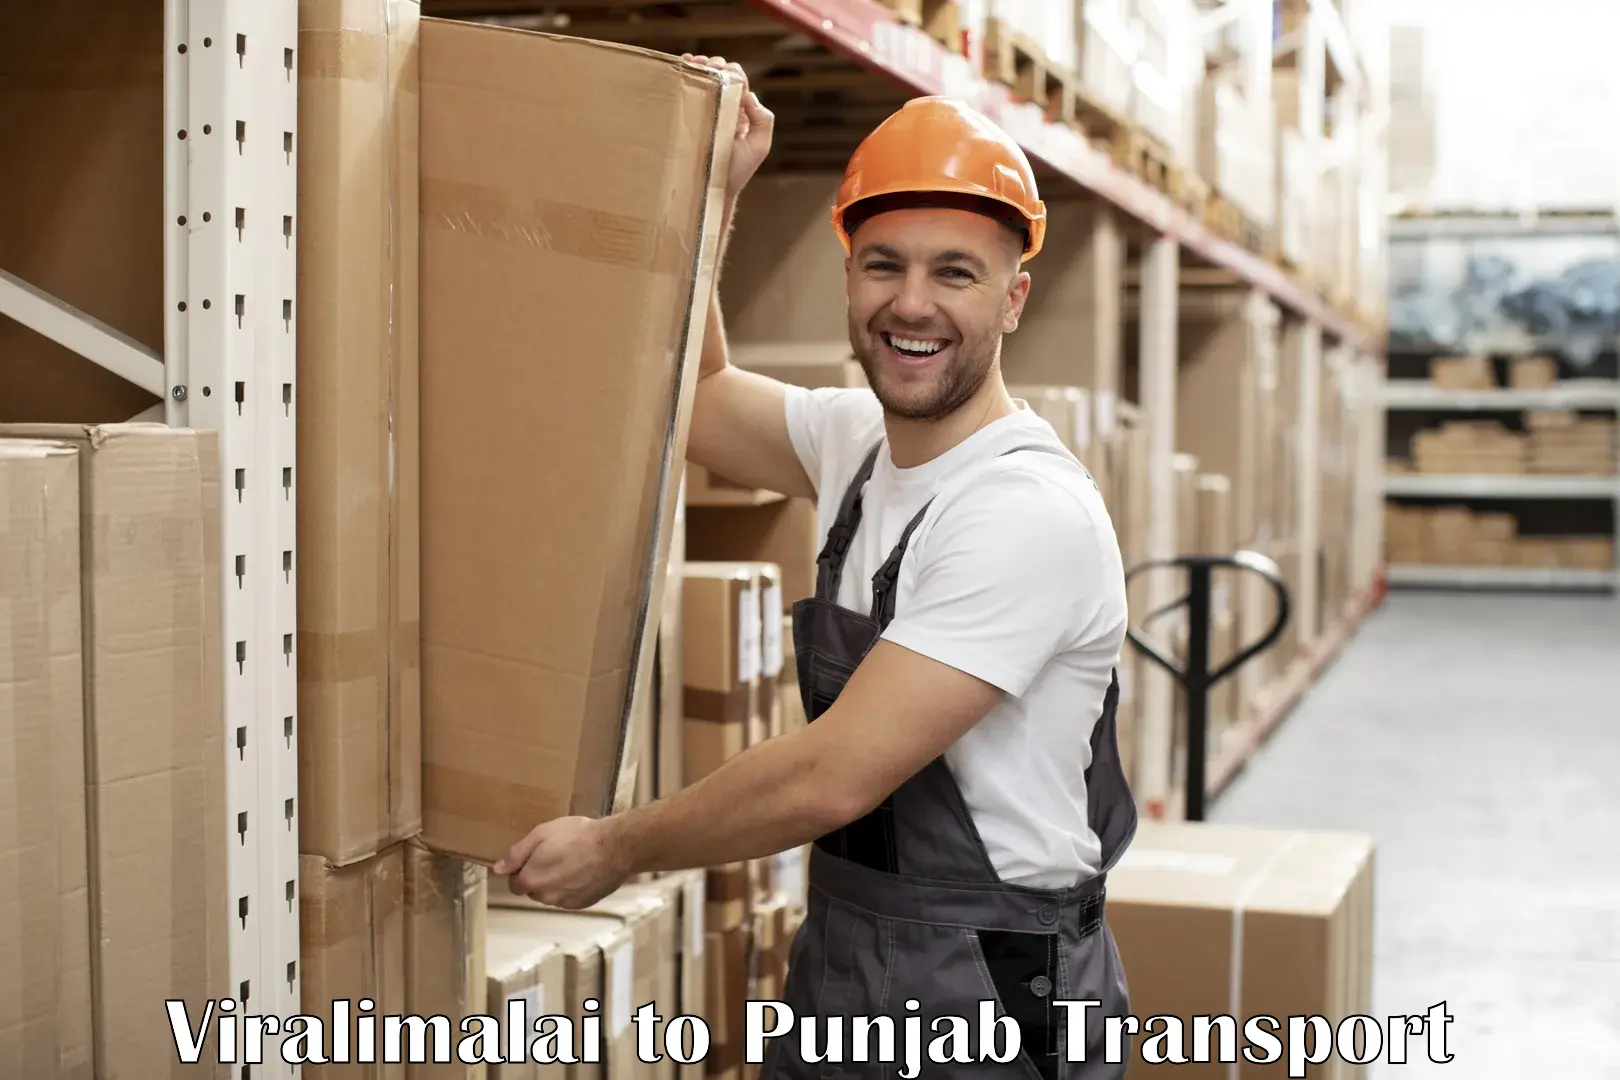 Shipping services Viralimalai to Jalandhar